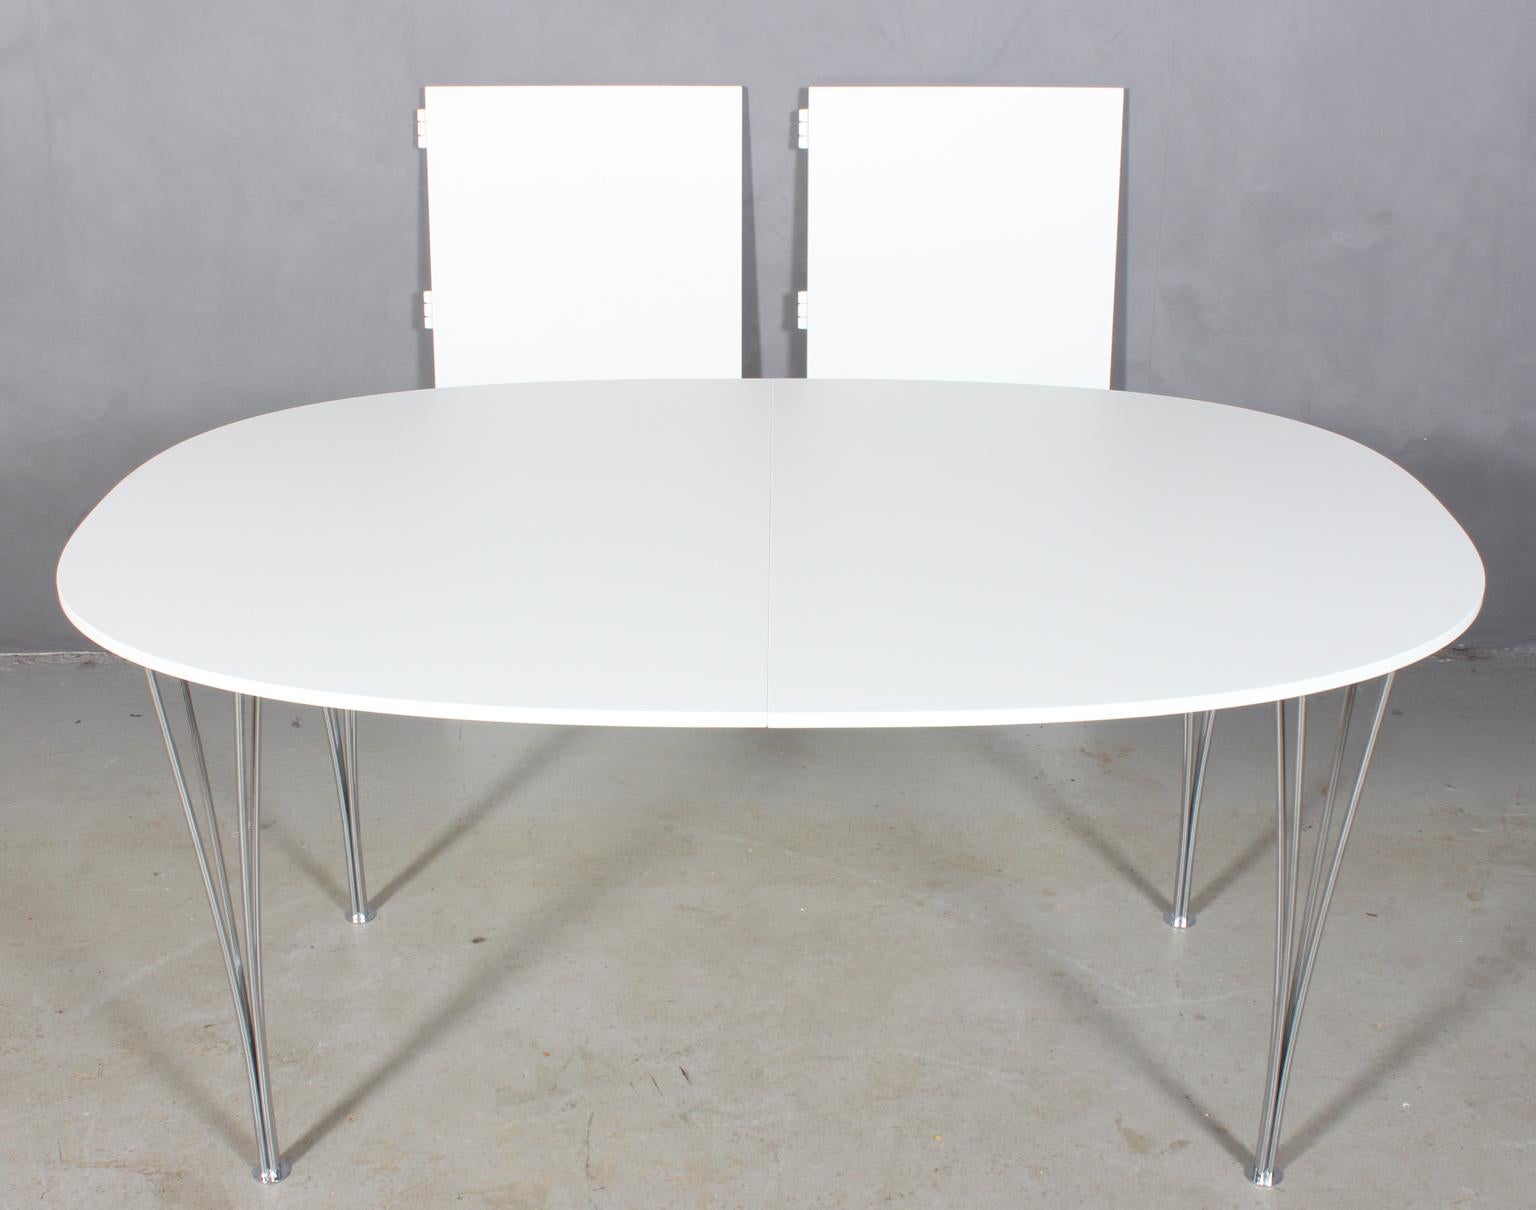 Table de salle à manger Piet Hein & Bruno Mathsson avec nouveau plateau professionnel laqué blanc.

Deux rallonges de 50 cm.

Pieds en métal chromé.

Modèle Super Elipse, fabriqué par Fritz Hansen.

C'est l'une des tables les plus